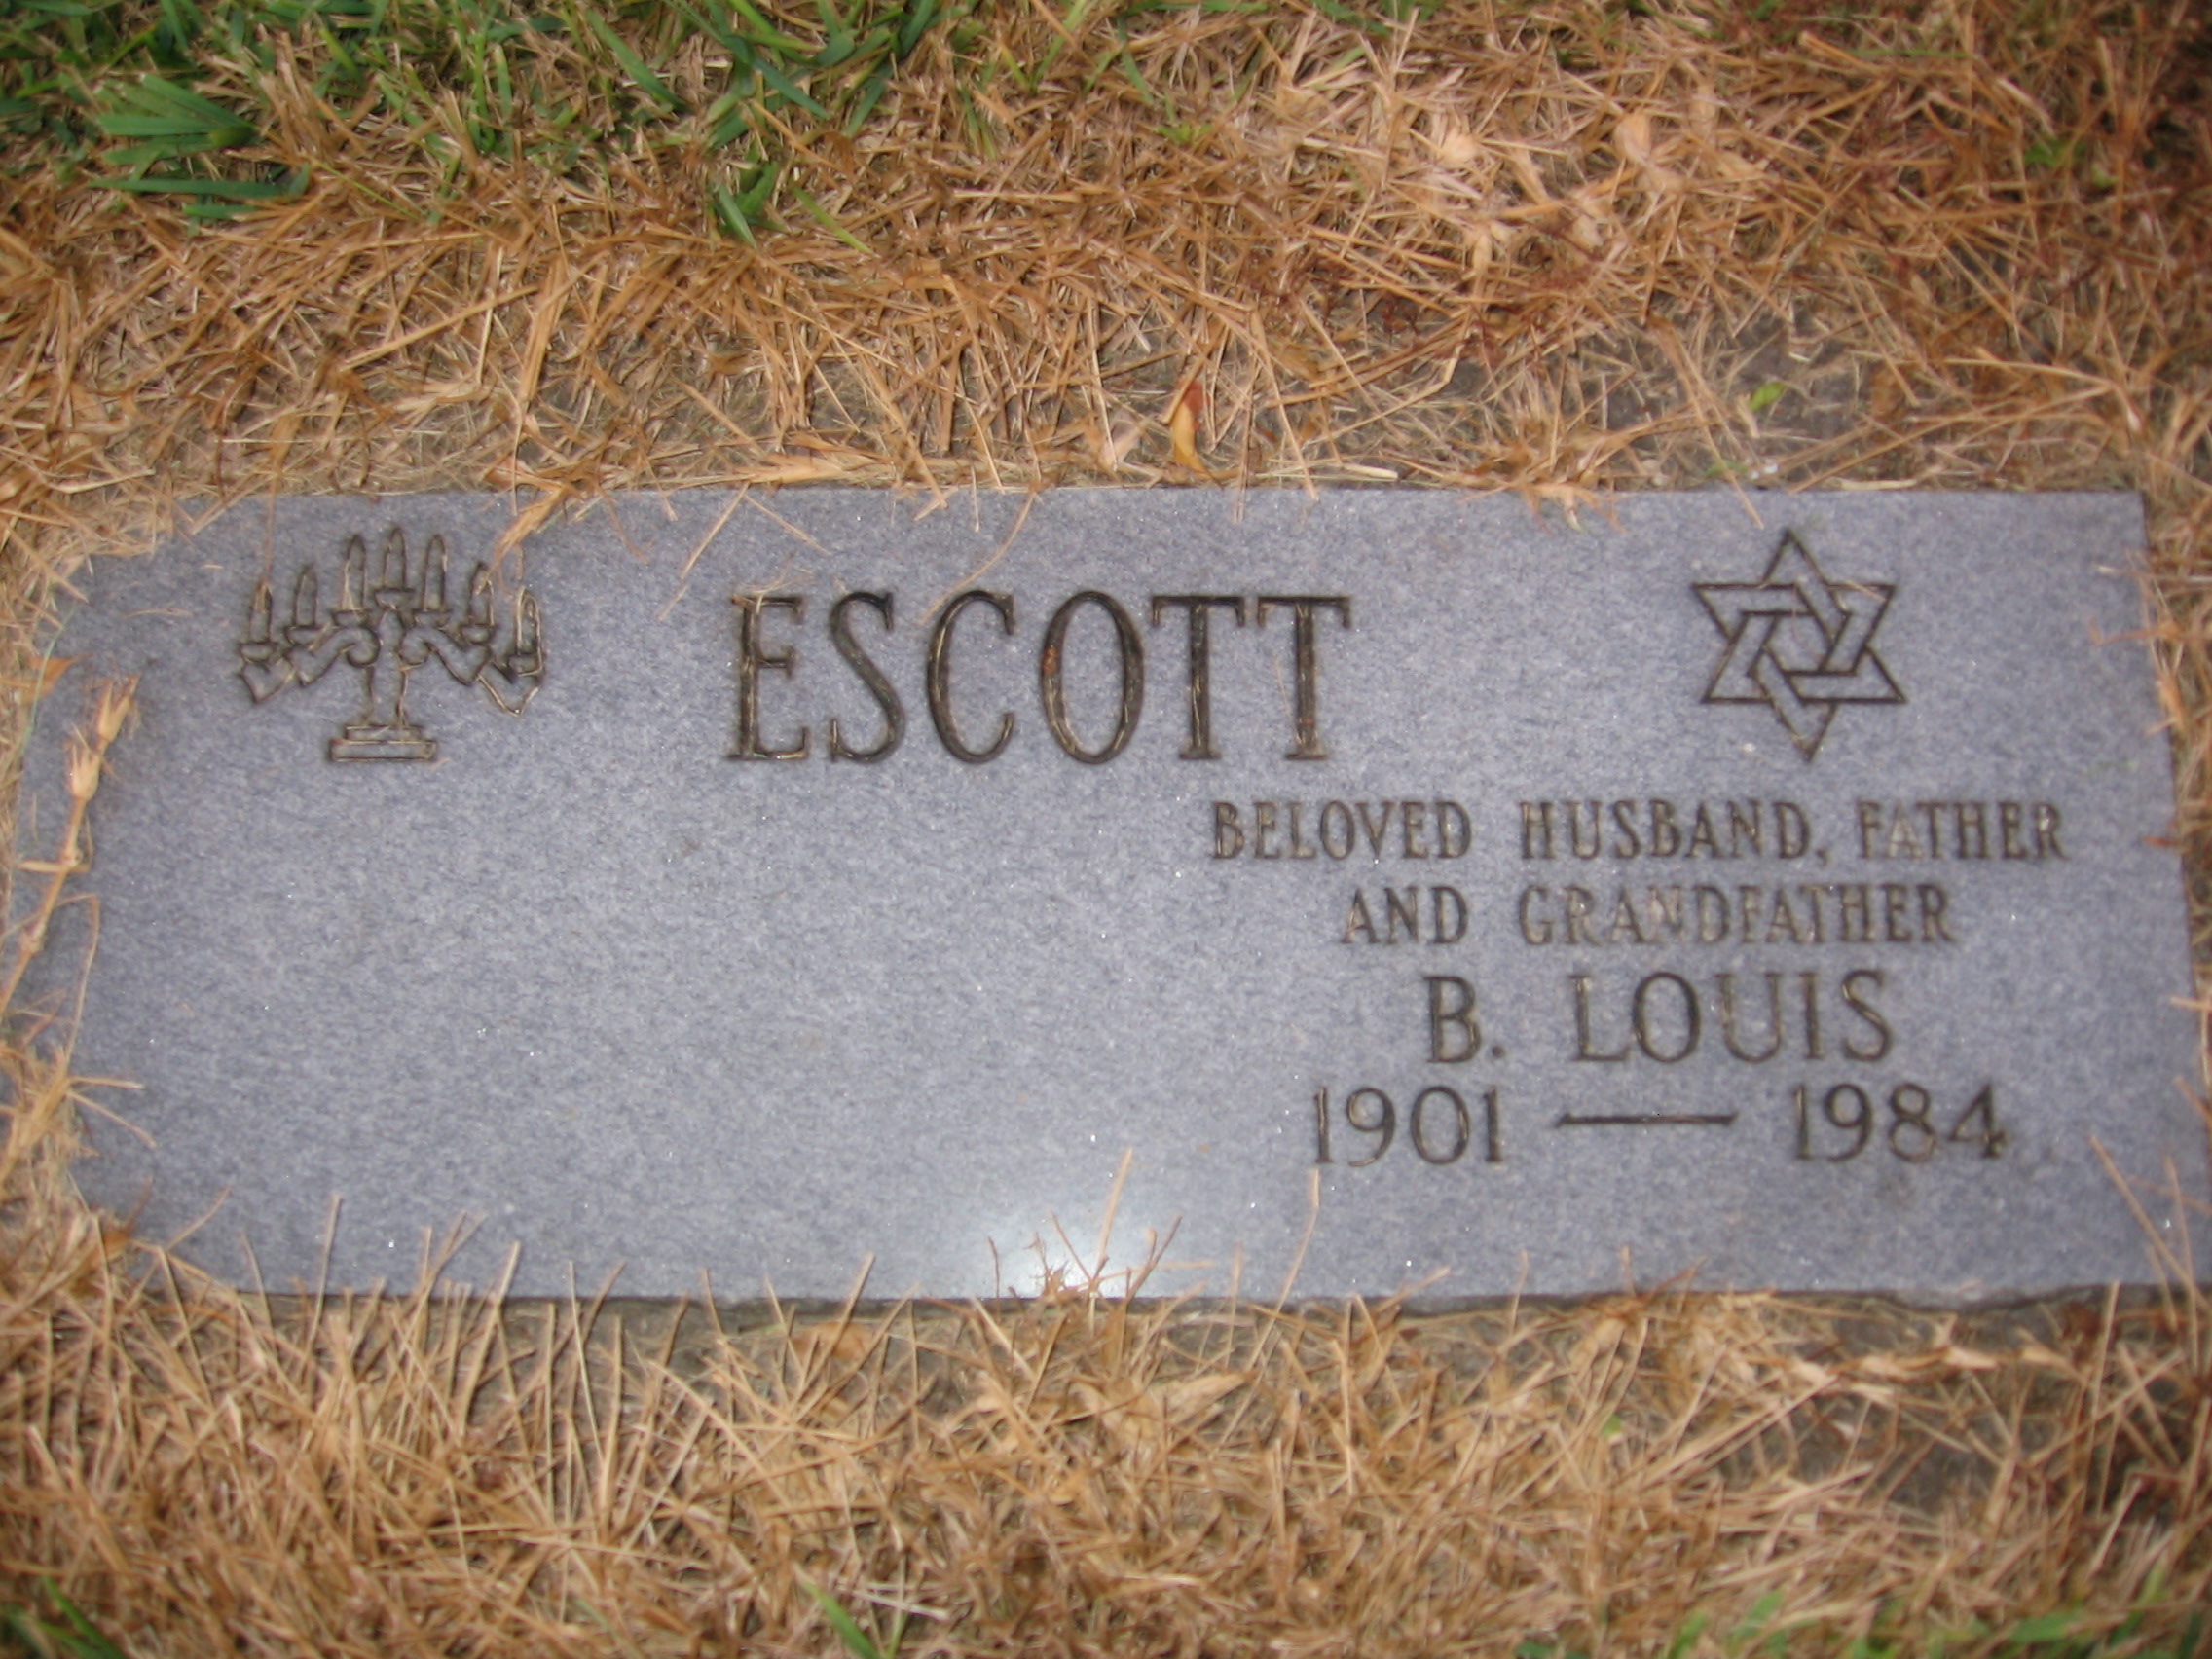 B Louis Escott